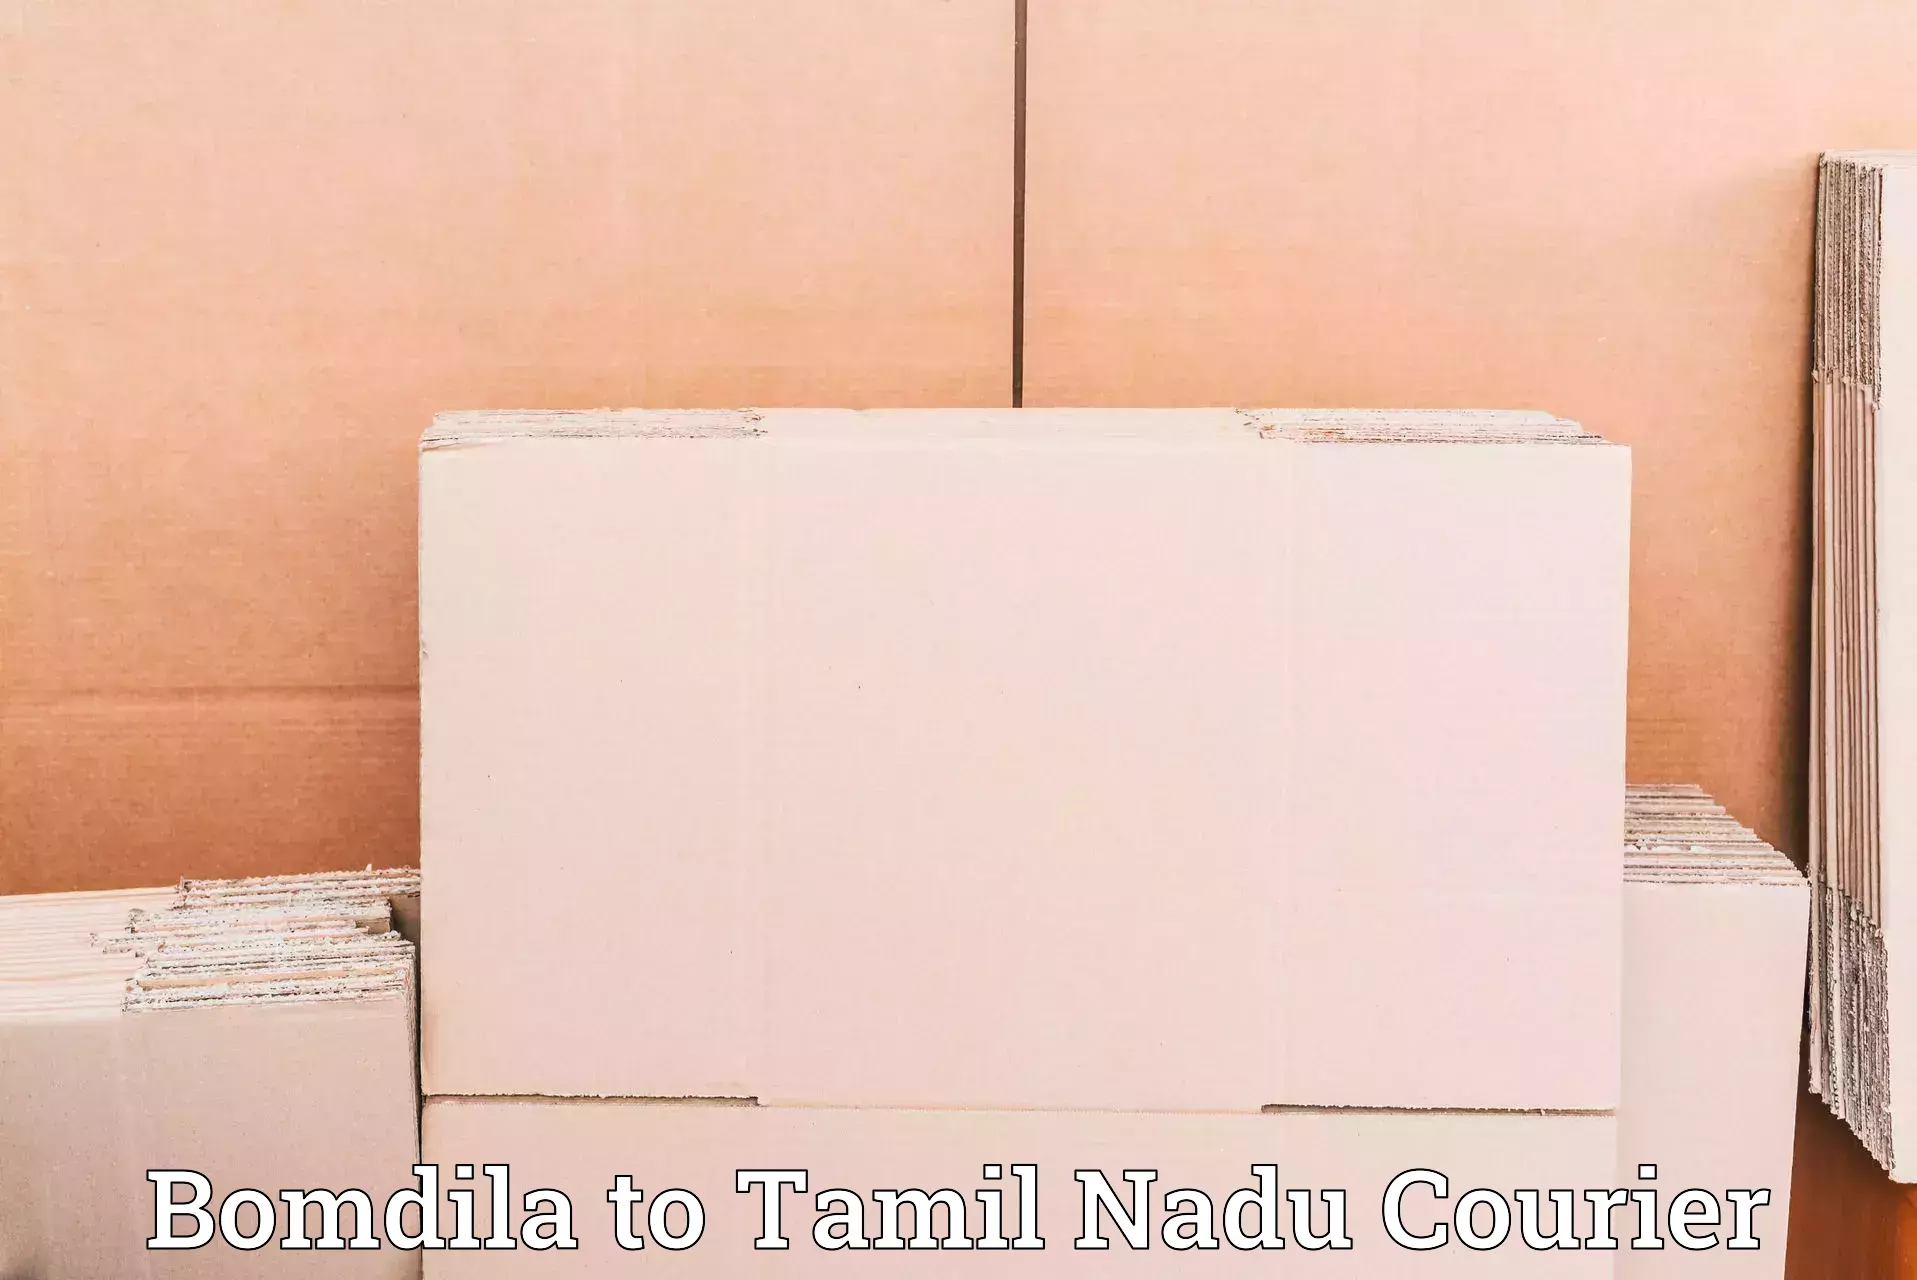 Residential courier service Bomdila to Thiruvadanai